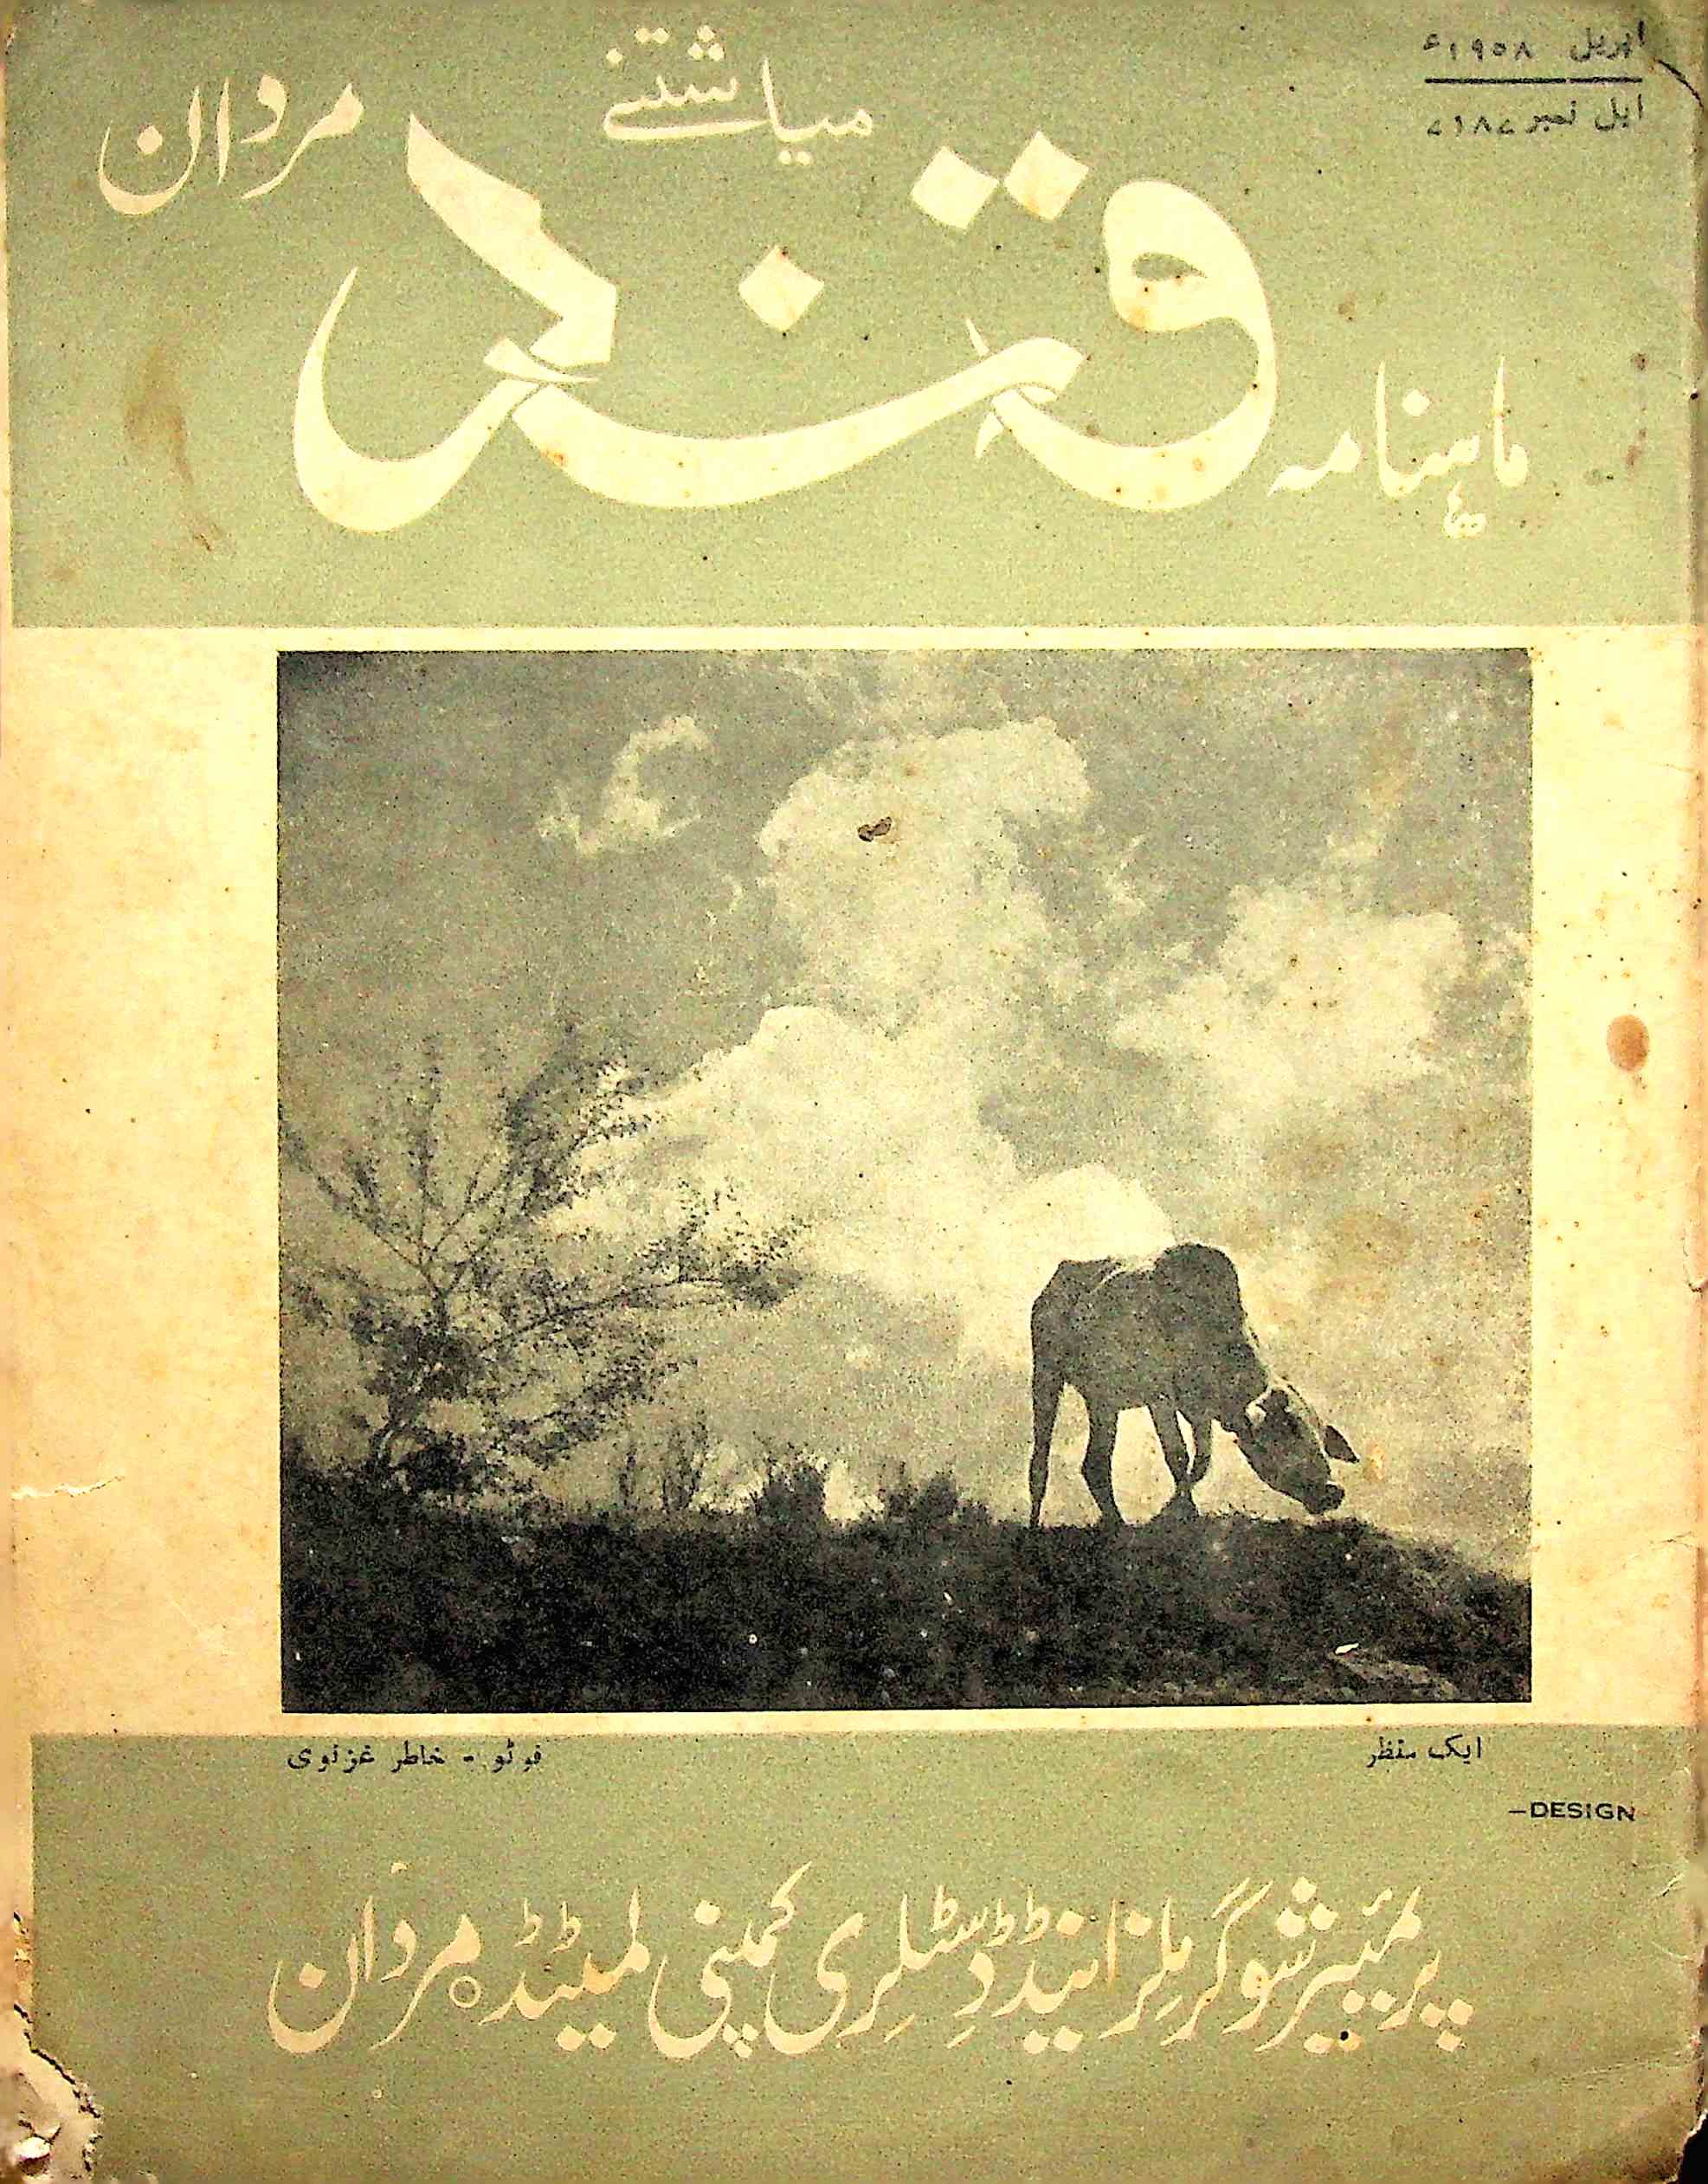 Qand Mardan Jild 1 No 6 April 1958